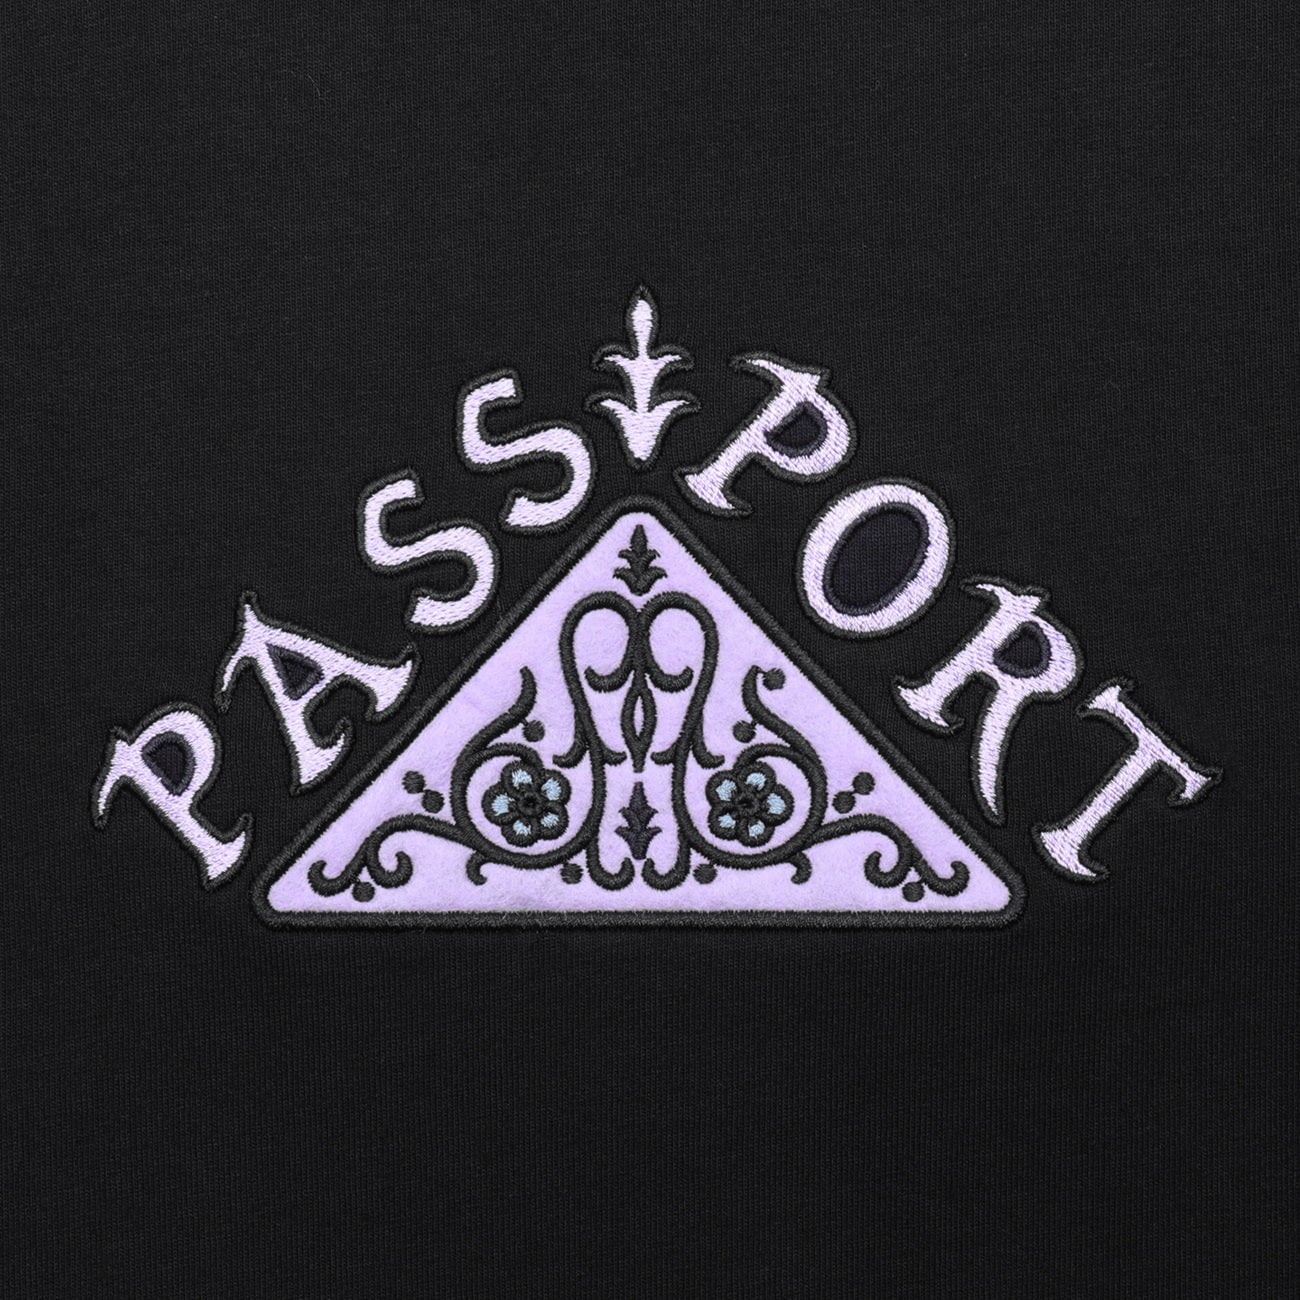 Pass~Port Manuscript T-Shirt Herren T-Shirt Passport Skateboards 